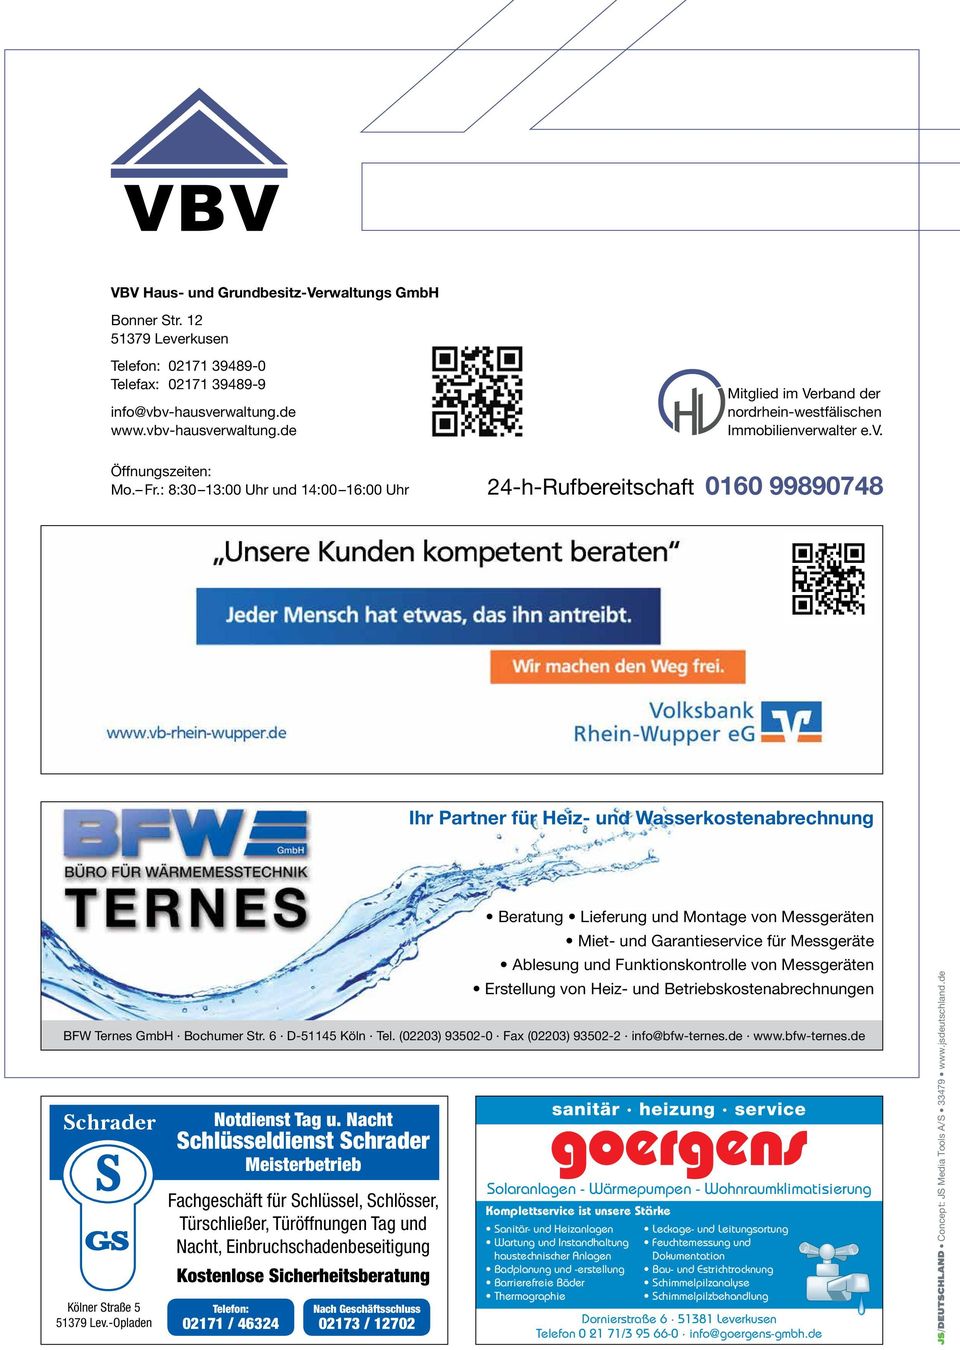 : 8:30 13:00 Uhr und 14:00 16:00 Uhr 24-h-Rufbereitschaft 0160 99890748 Ihr Partner für Heiz- und Wasserkostenabrechnung BFW Ternes GmbH Bochumer Str. 6 D-51145 Köln Tel.